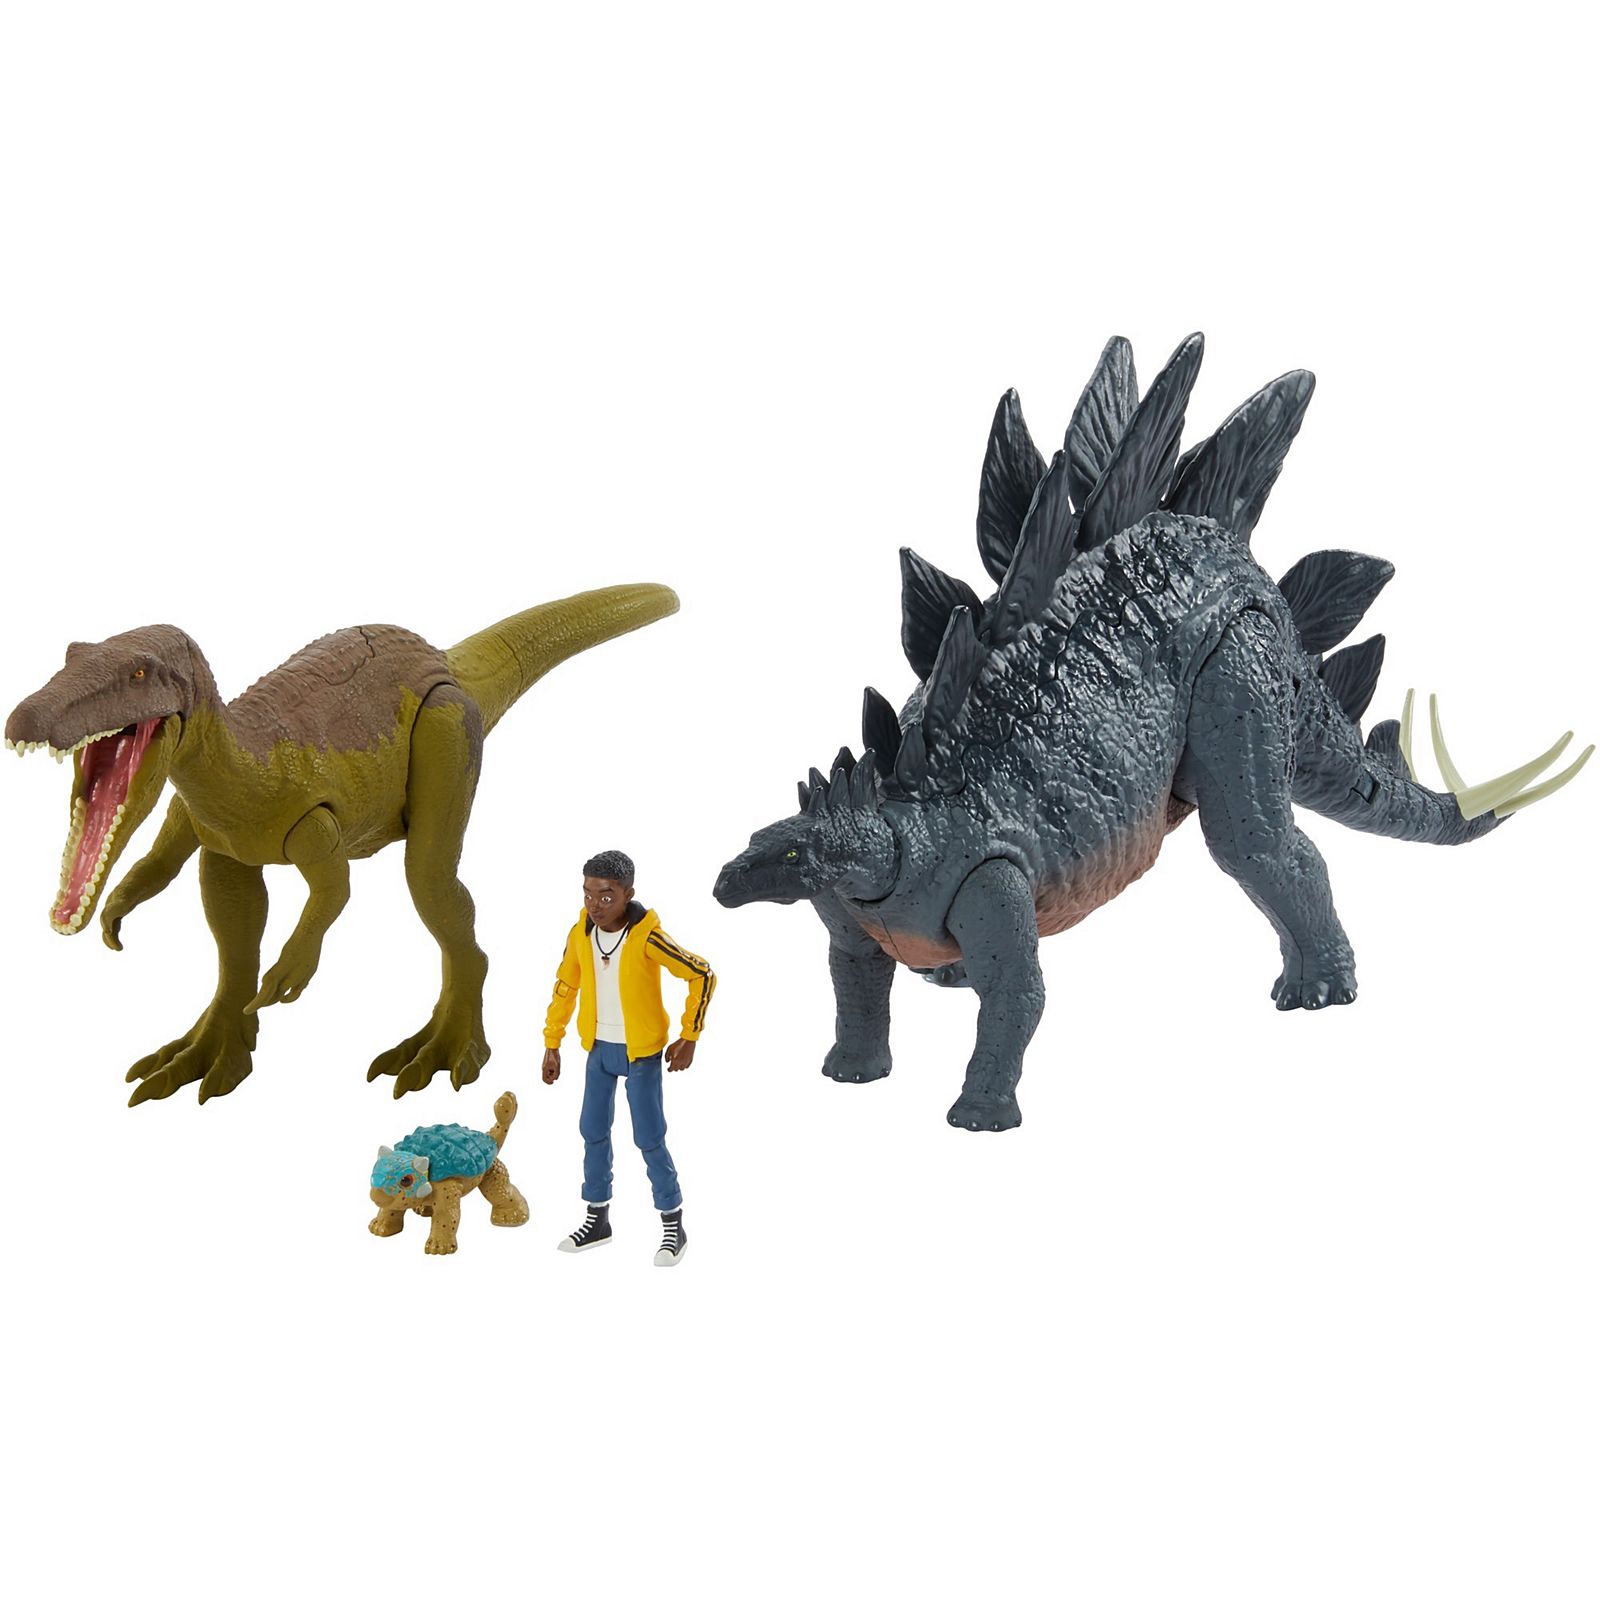 Мир динозавров игрушка. Игрушки мир Юрского периода меловой лагерь. Игрушки Mattel джурасик ворлд. Jurassic World 2020 Camp Cretaceous Mattel игрушки. Mattel Jurassic World Camp Cretaceous игрушка.